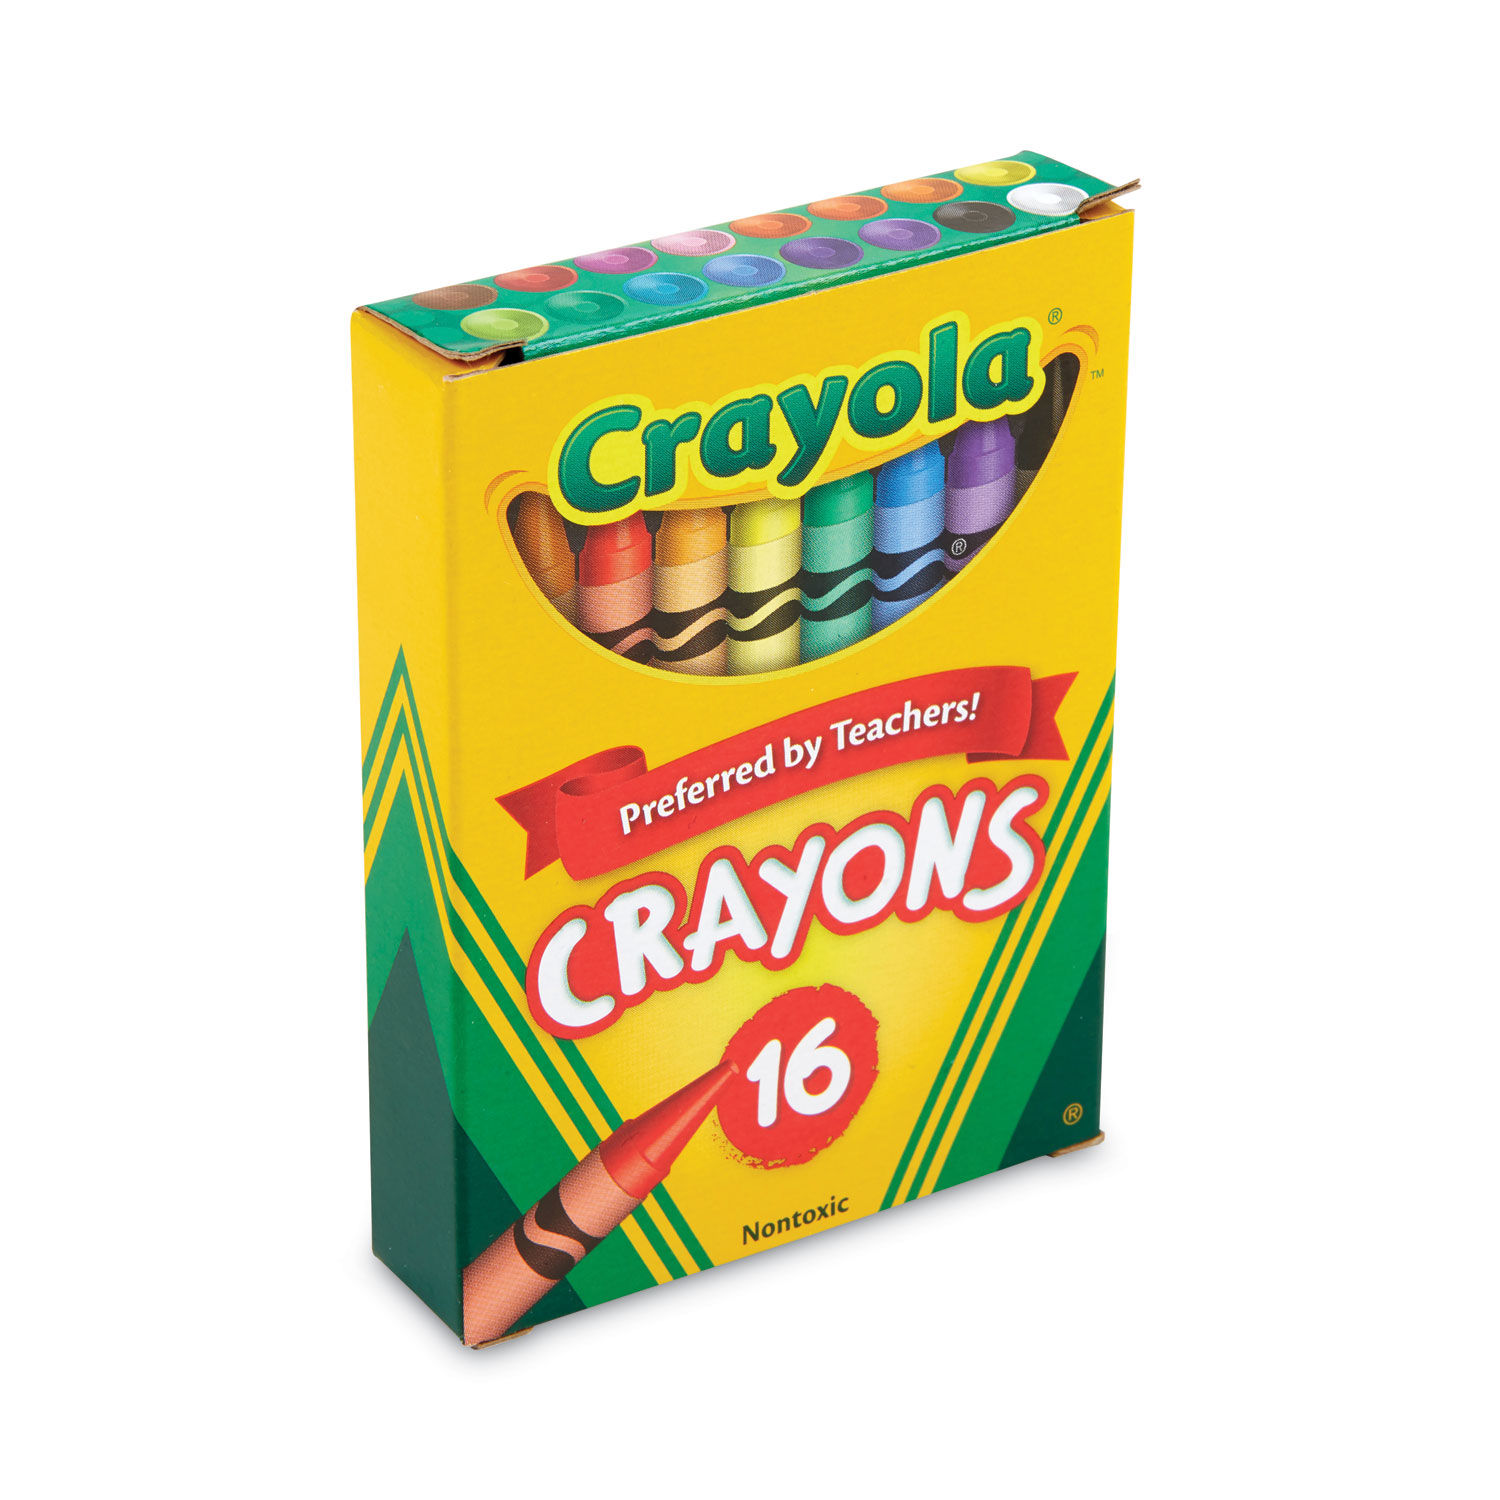  Crayon Box